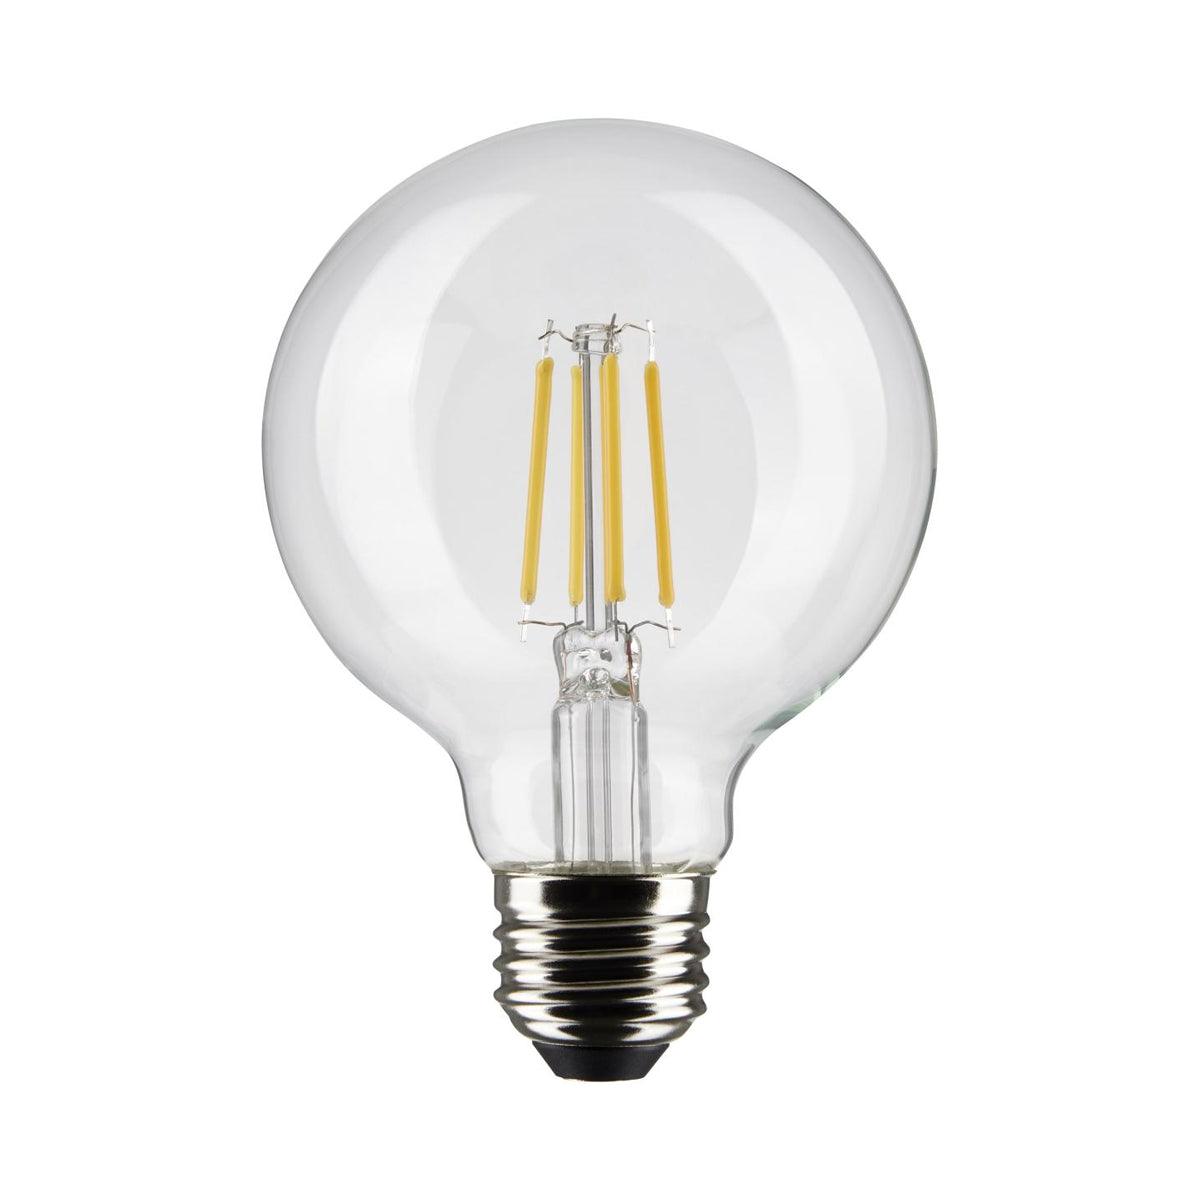 G25 LED Globe Bulb, 5 Watt, 350 Lumens, 3000K, E26 Medium Base, Clear Finish, Pack Of 2 - Bees Lighting